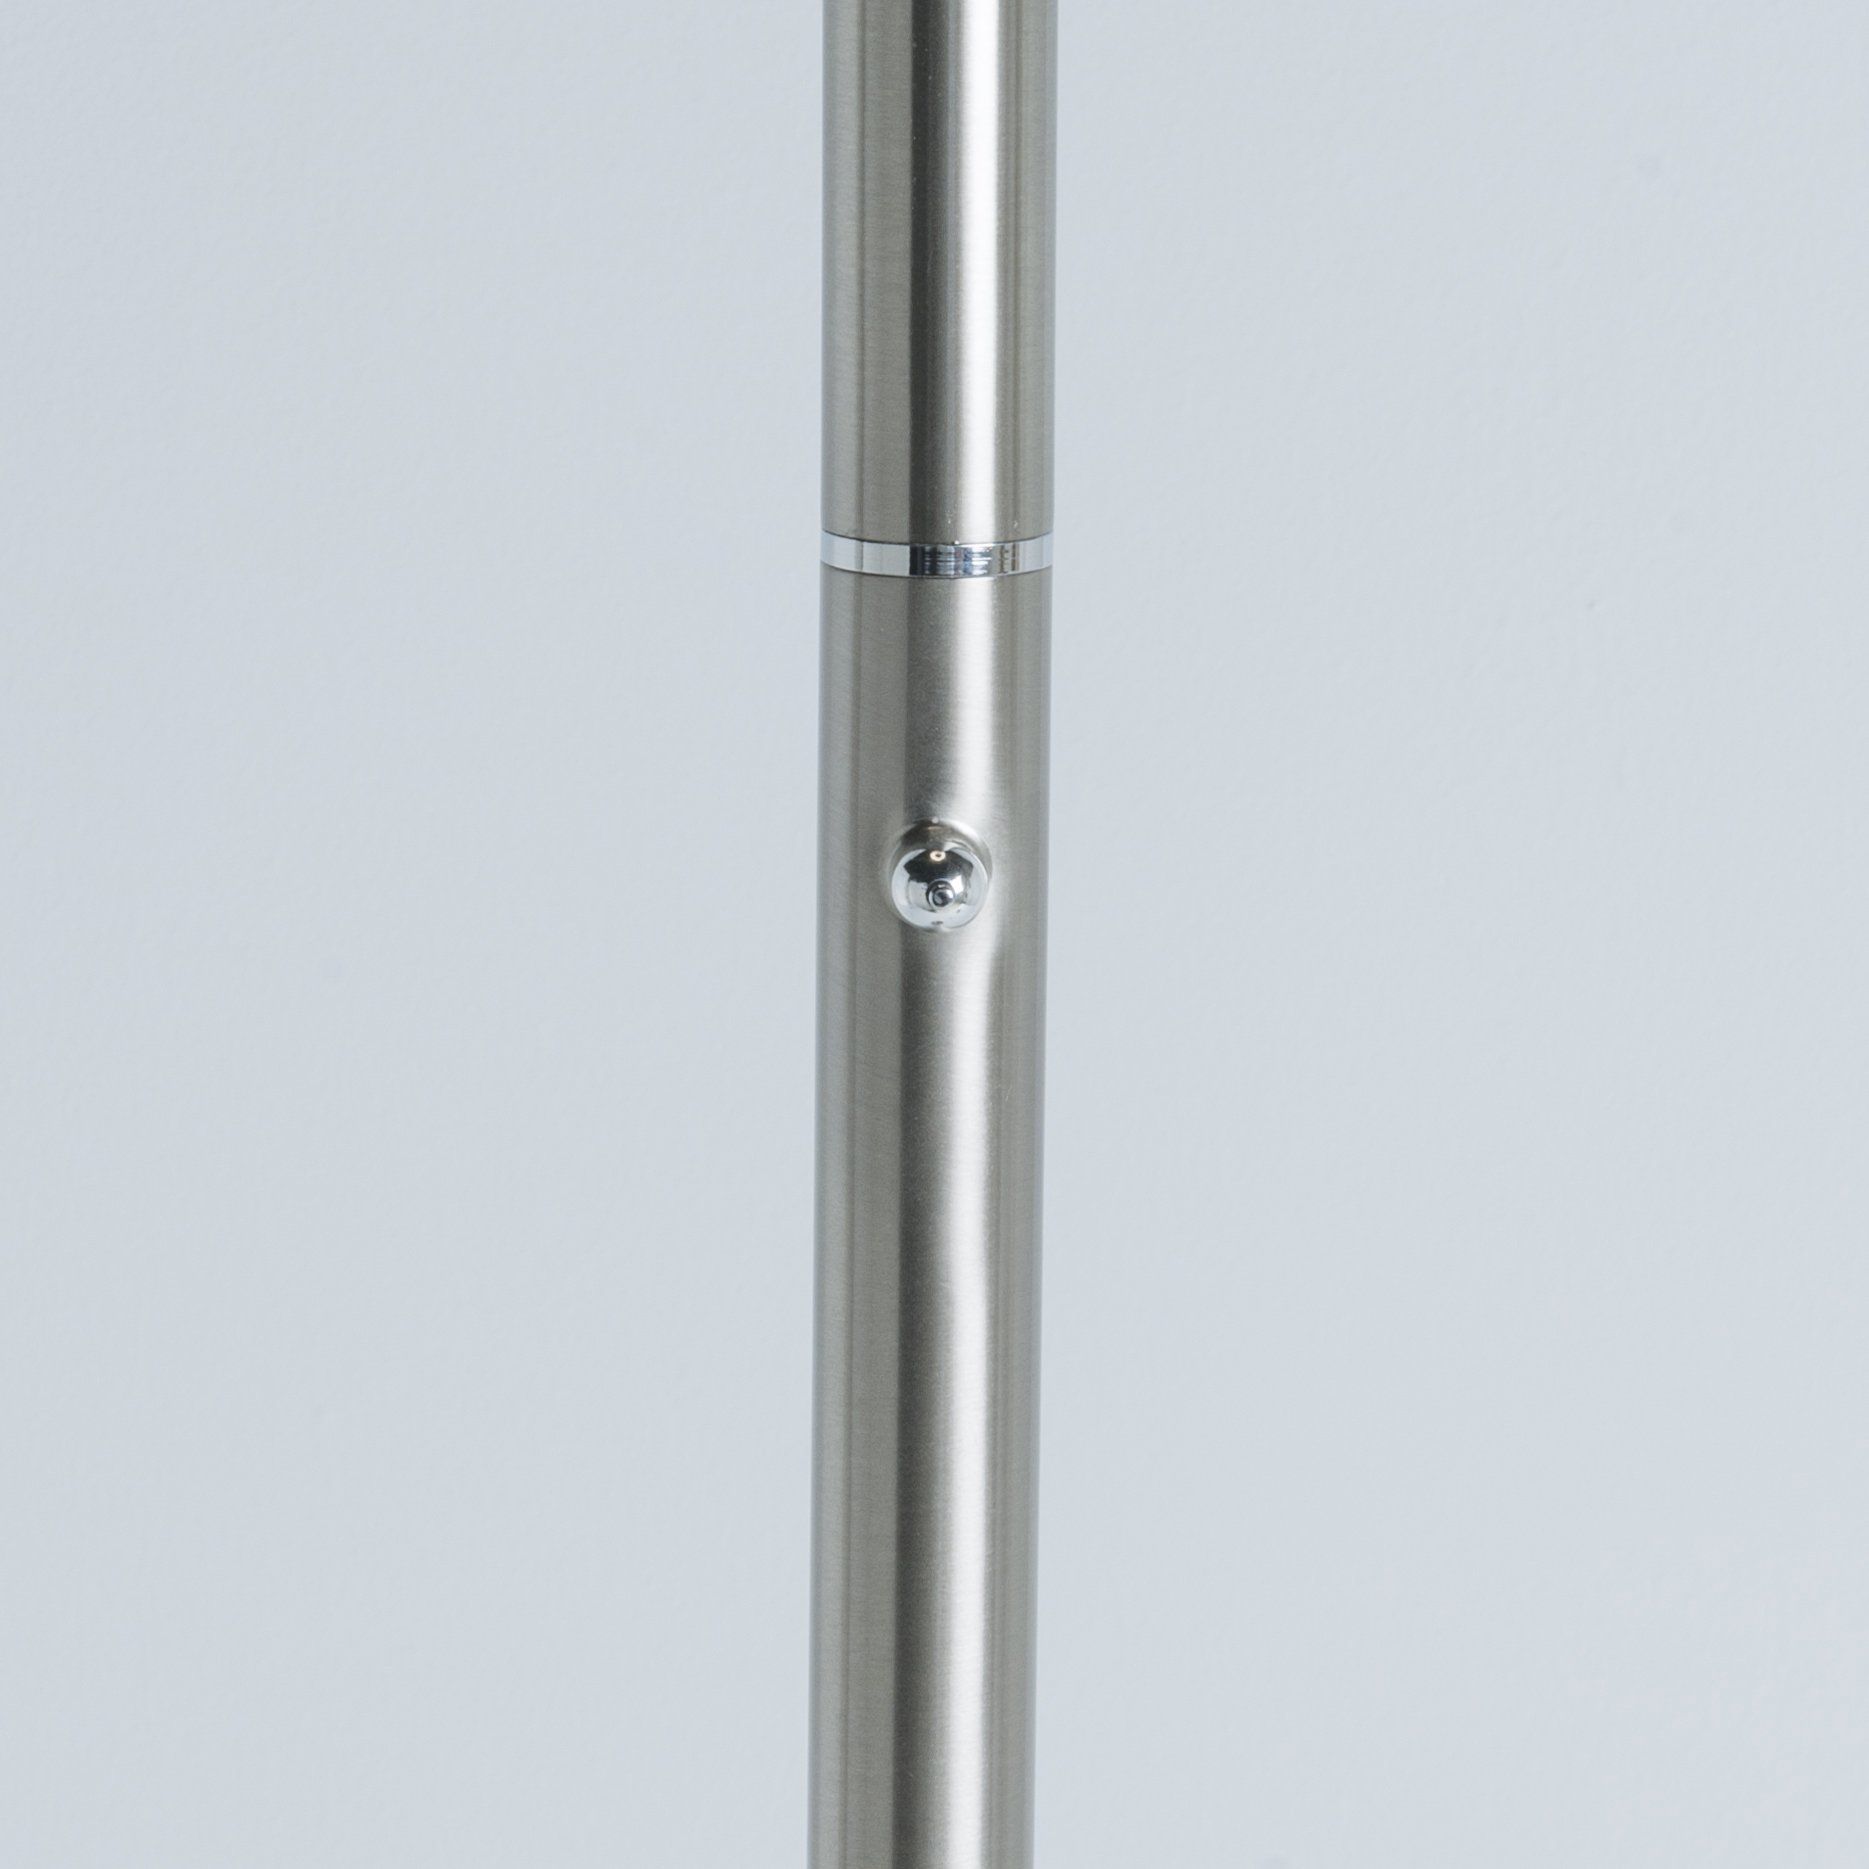 Lampadaire design Led dimmable RING argenté en nickel satiné